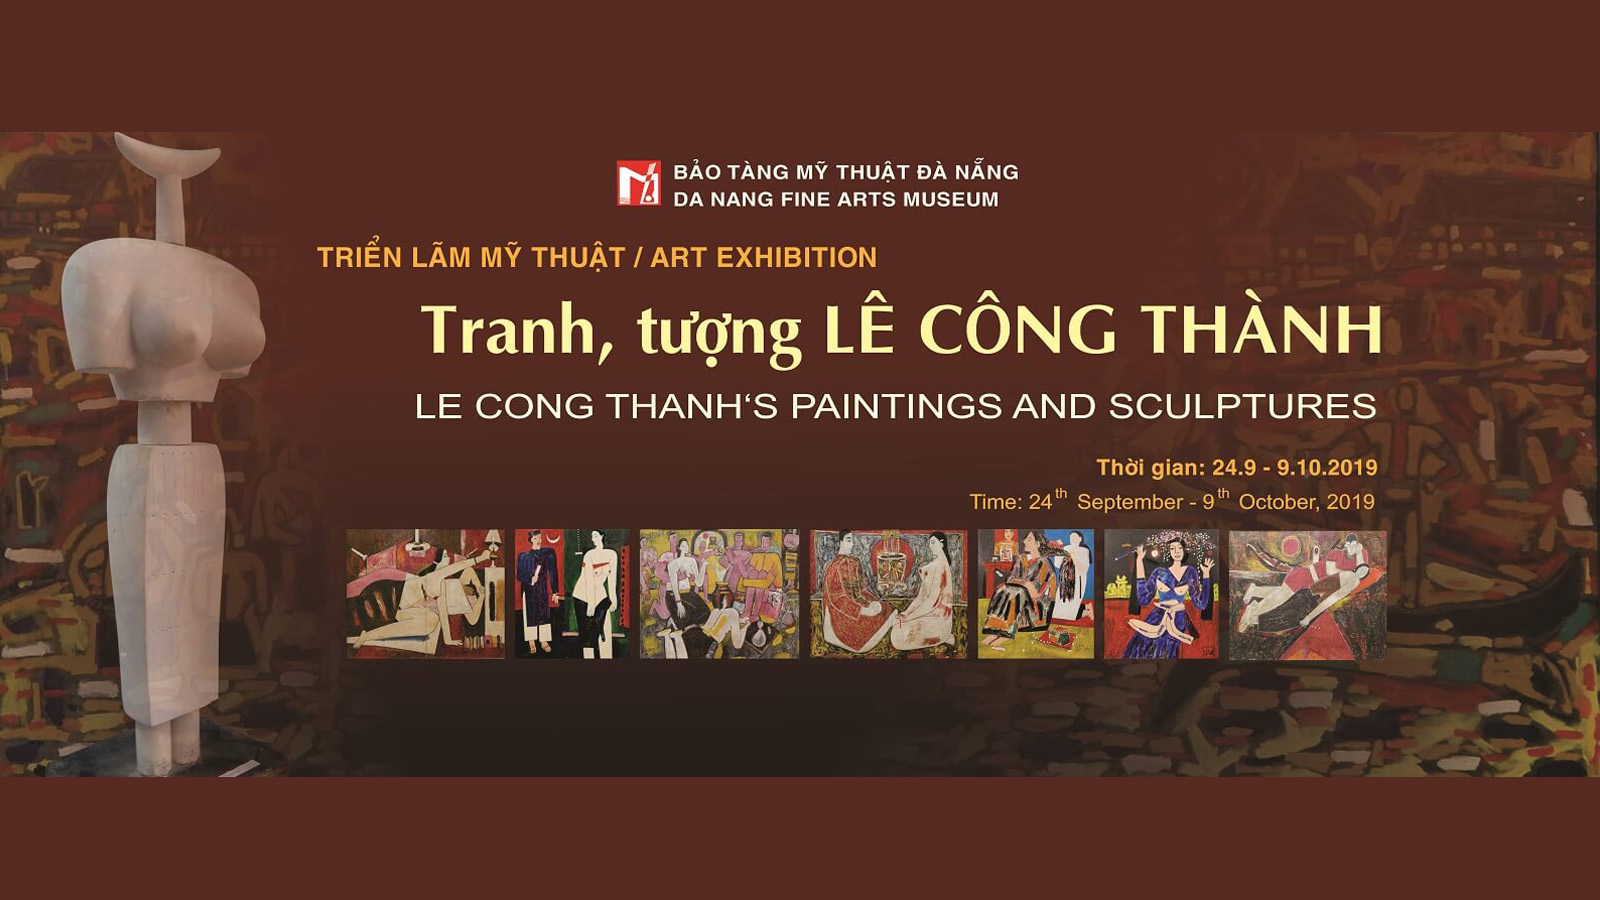 Trien Lam My Thuat Chu De Tranh Tuong Le Cong Thanh